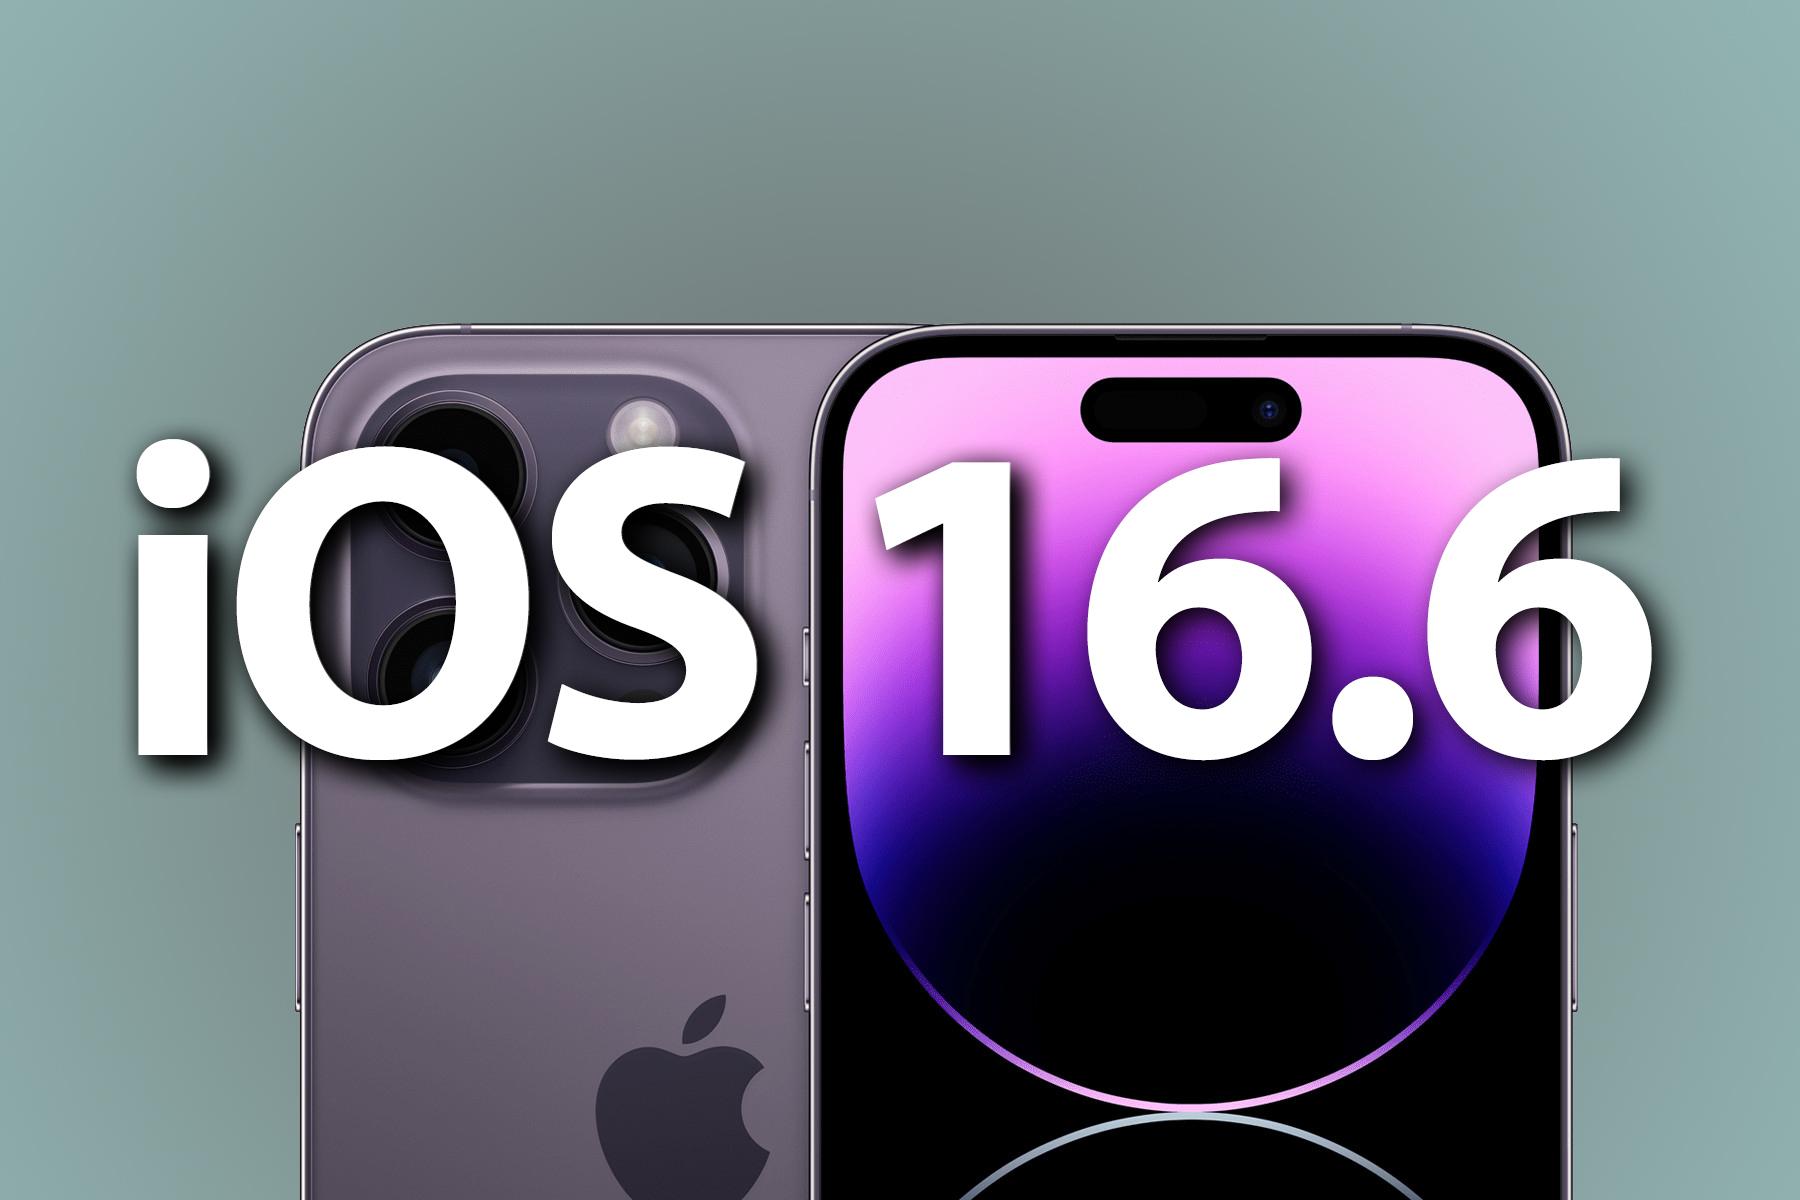 Les 5 fonctionnalités passionnantes d’iOS 16.6 à découvrir avant l’arrivée d’iOS 17